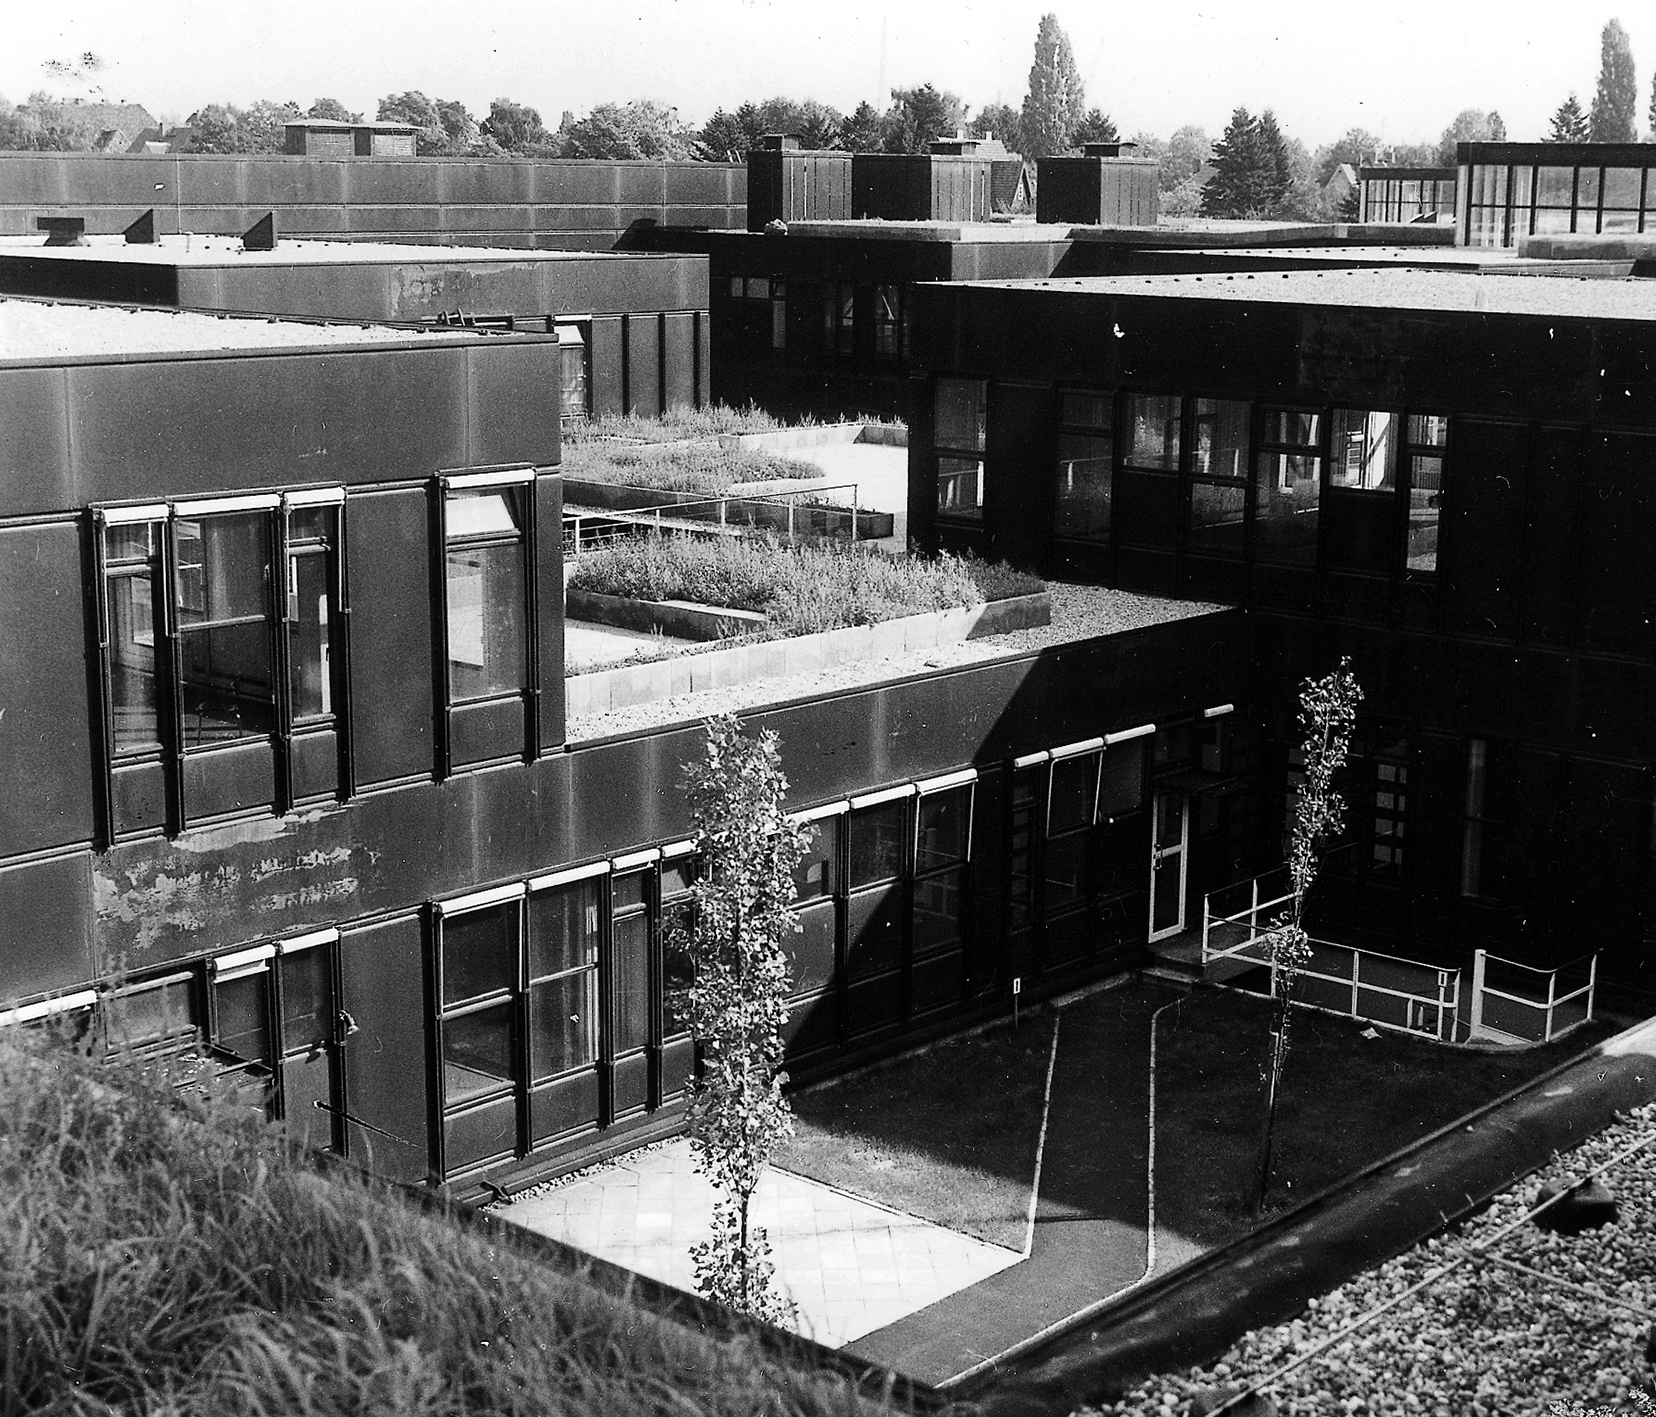 Système constructif et façades, Université libre, Berlin, 1965-1973 (G. Candilis, A. Josic, S. Woods et M. Schiedhelm, arch.).